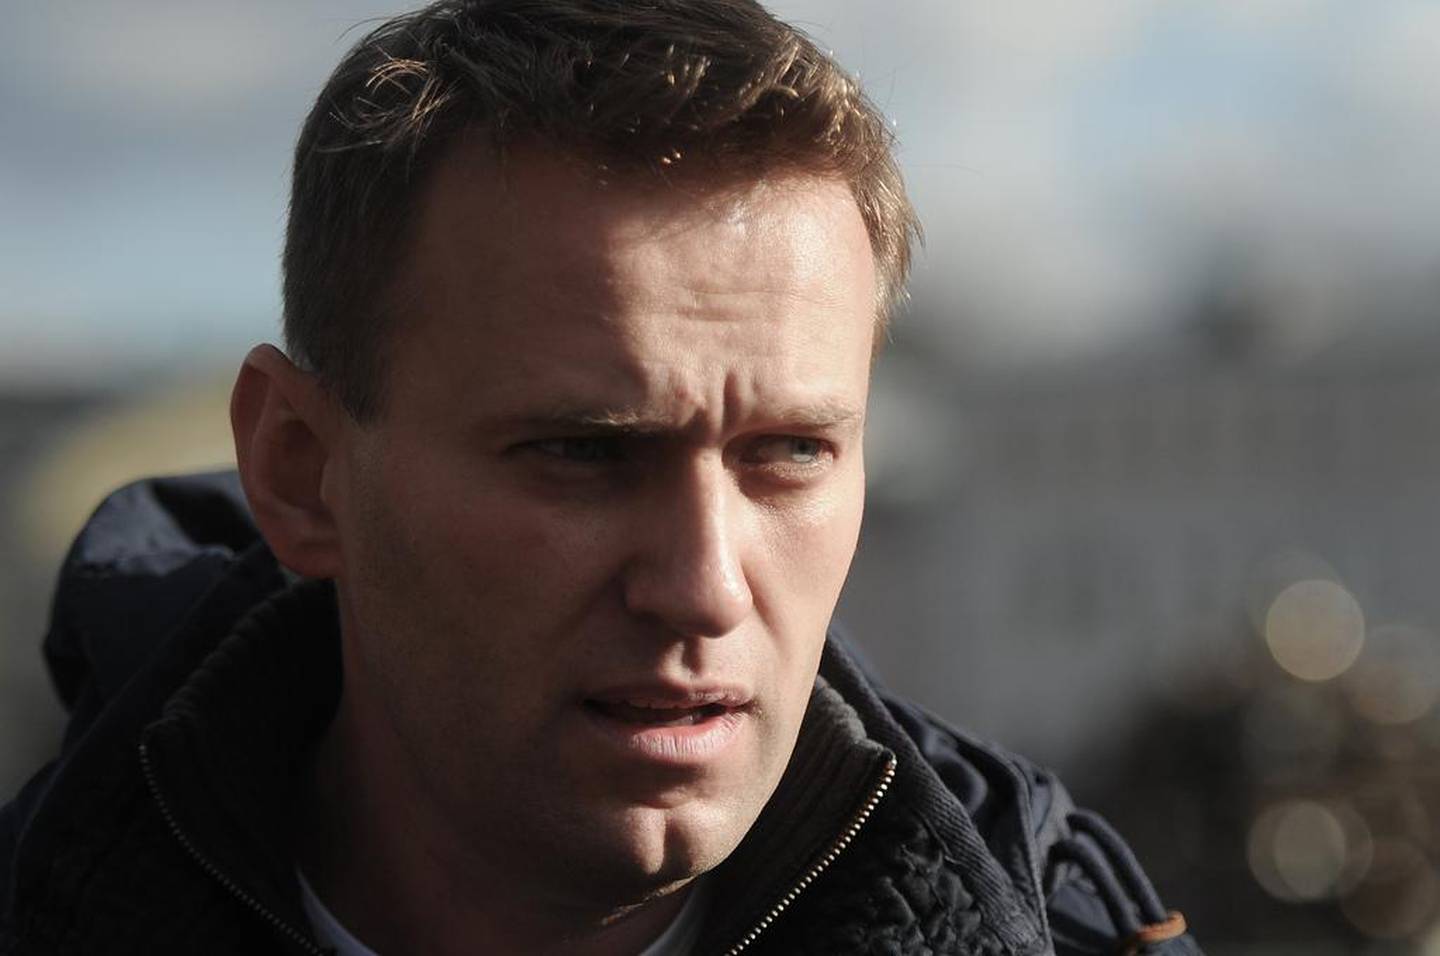 Lørdagens demonstrasjon er en protest mot at en rekke opposisjonspolitikere ikke får stille som kandidater til valget på nytt bystyre i Moskva. Den fremtredende Putin-kritikeren Aleksej Navalnyj (på bildet) er også blant dem som har blitt nektet å stille.